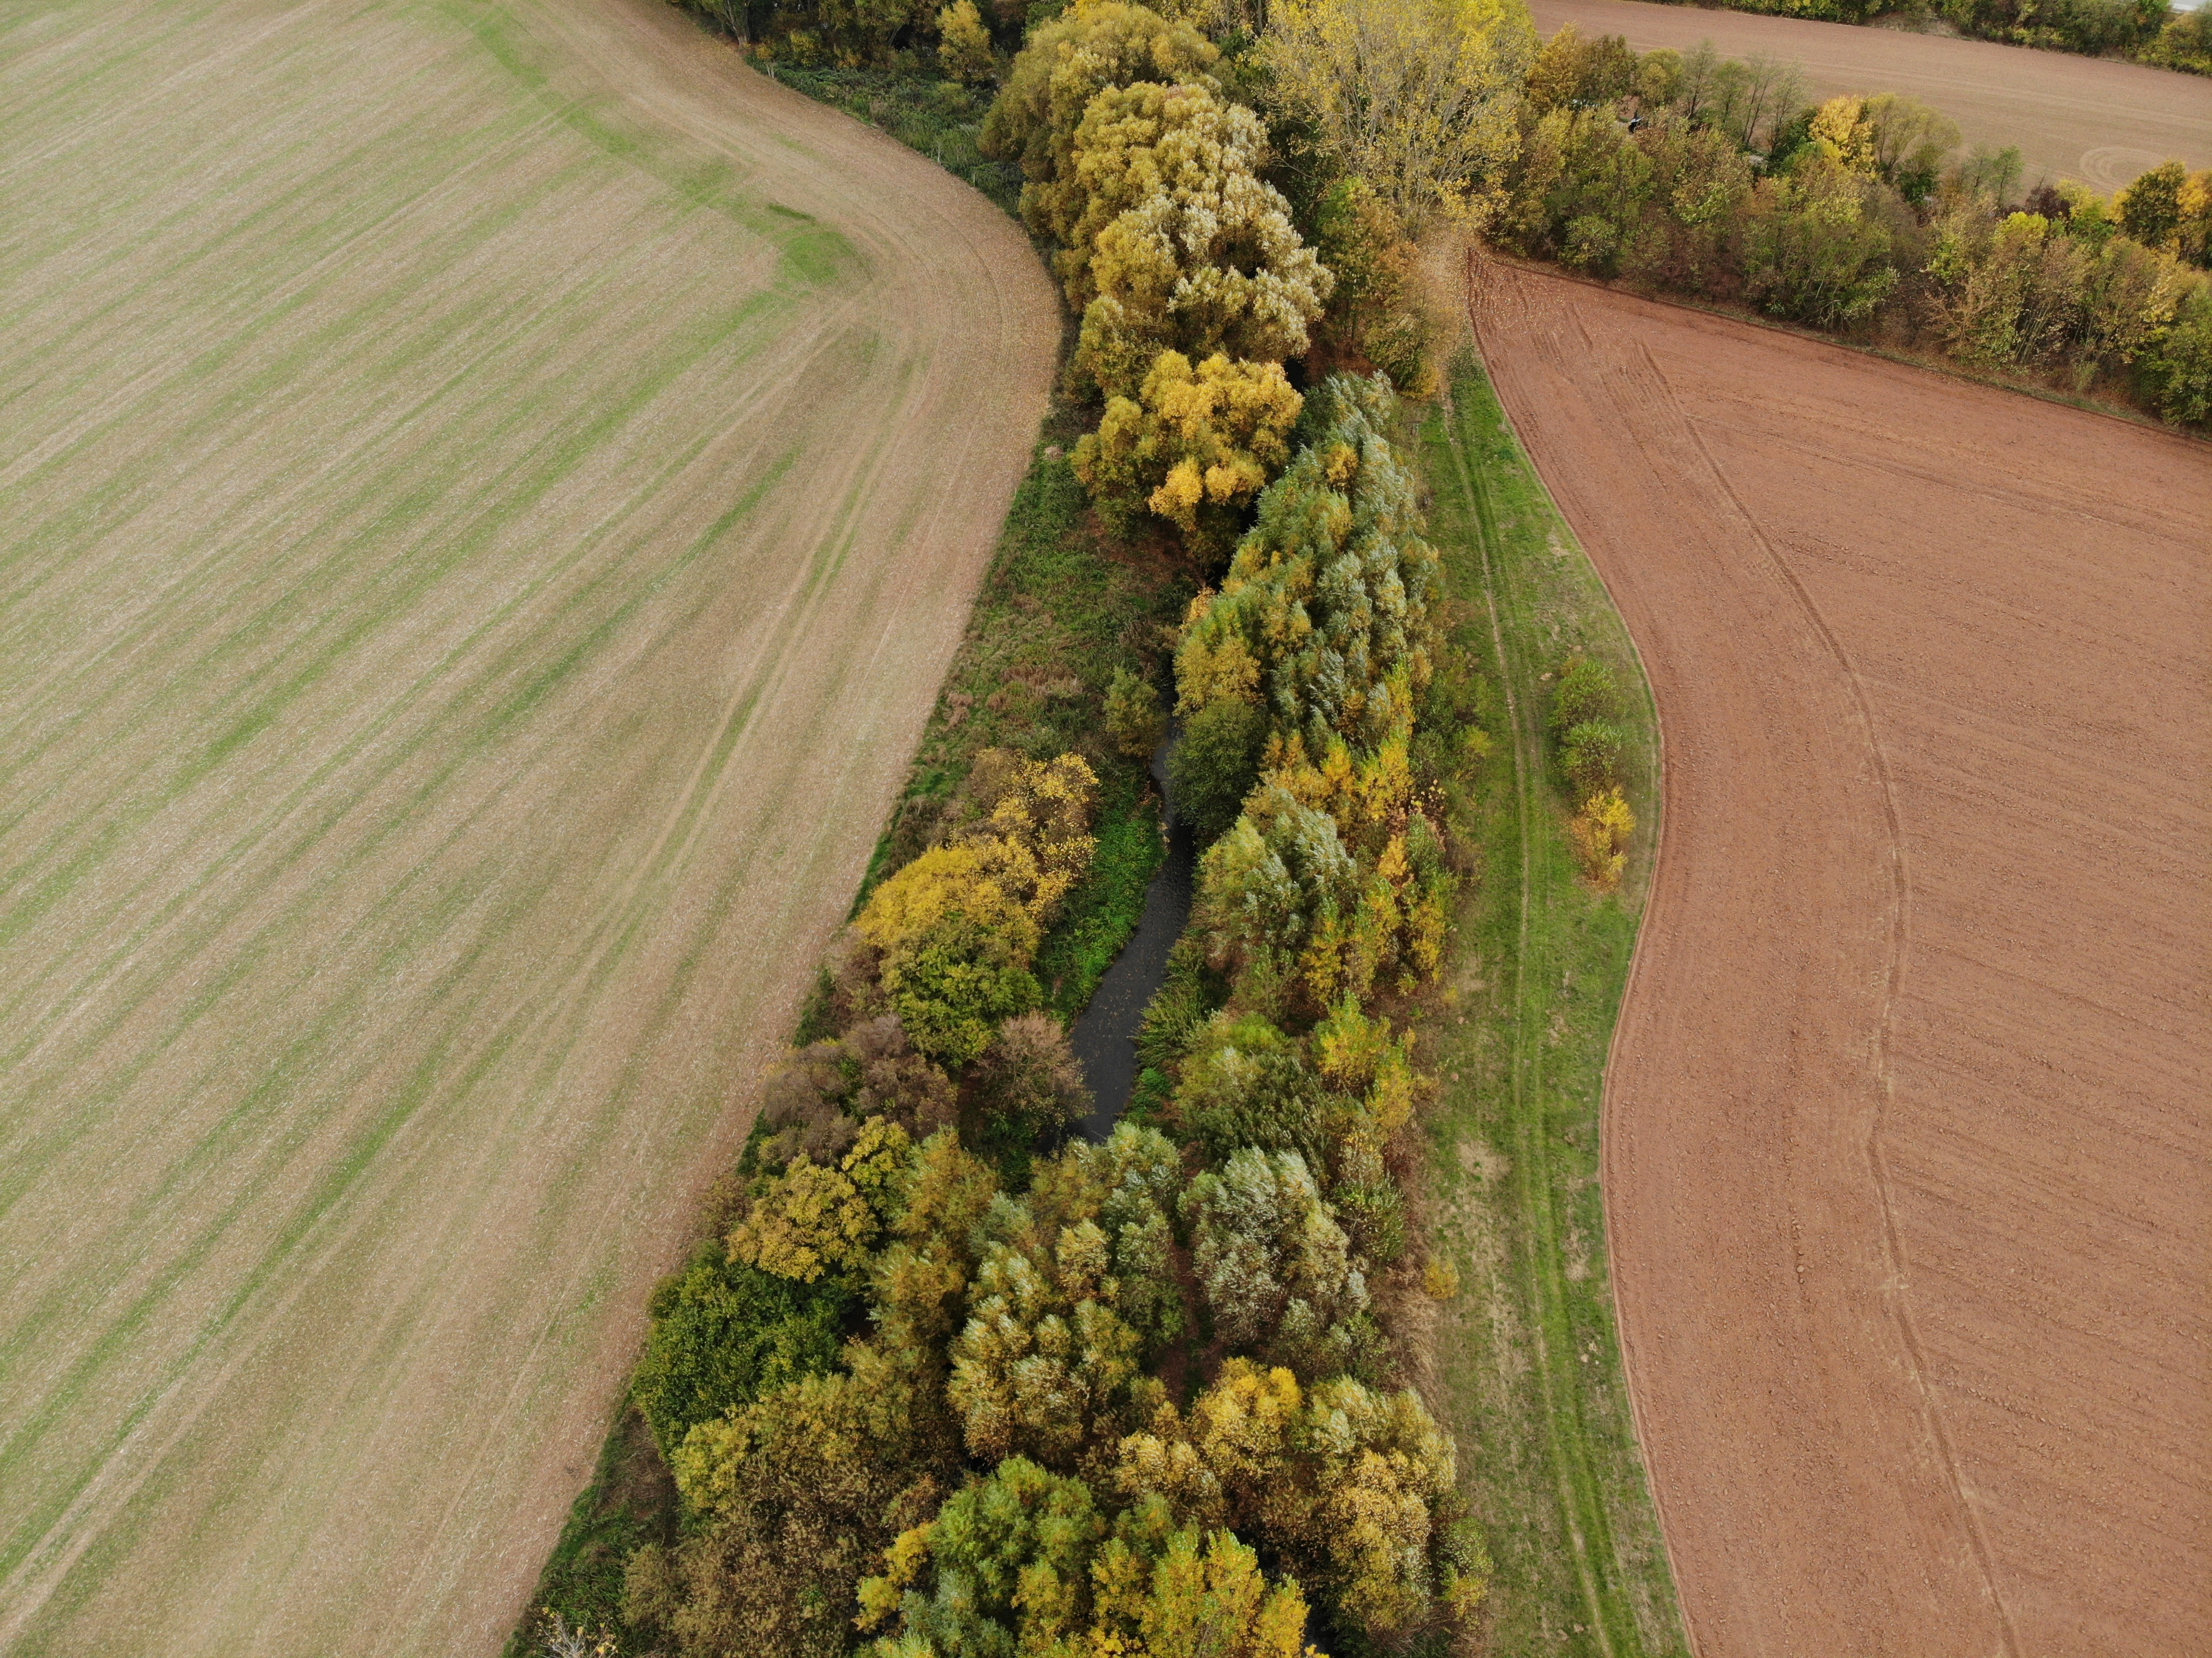 Luftbildaufnahme des wenige Meter breiten Randstreifens aus Bäumen und Sträuchern, die den Fluss Helme von landwirtschaftlichen Flächen abgrenzt.